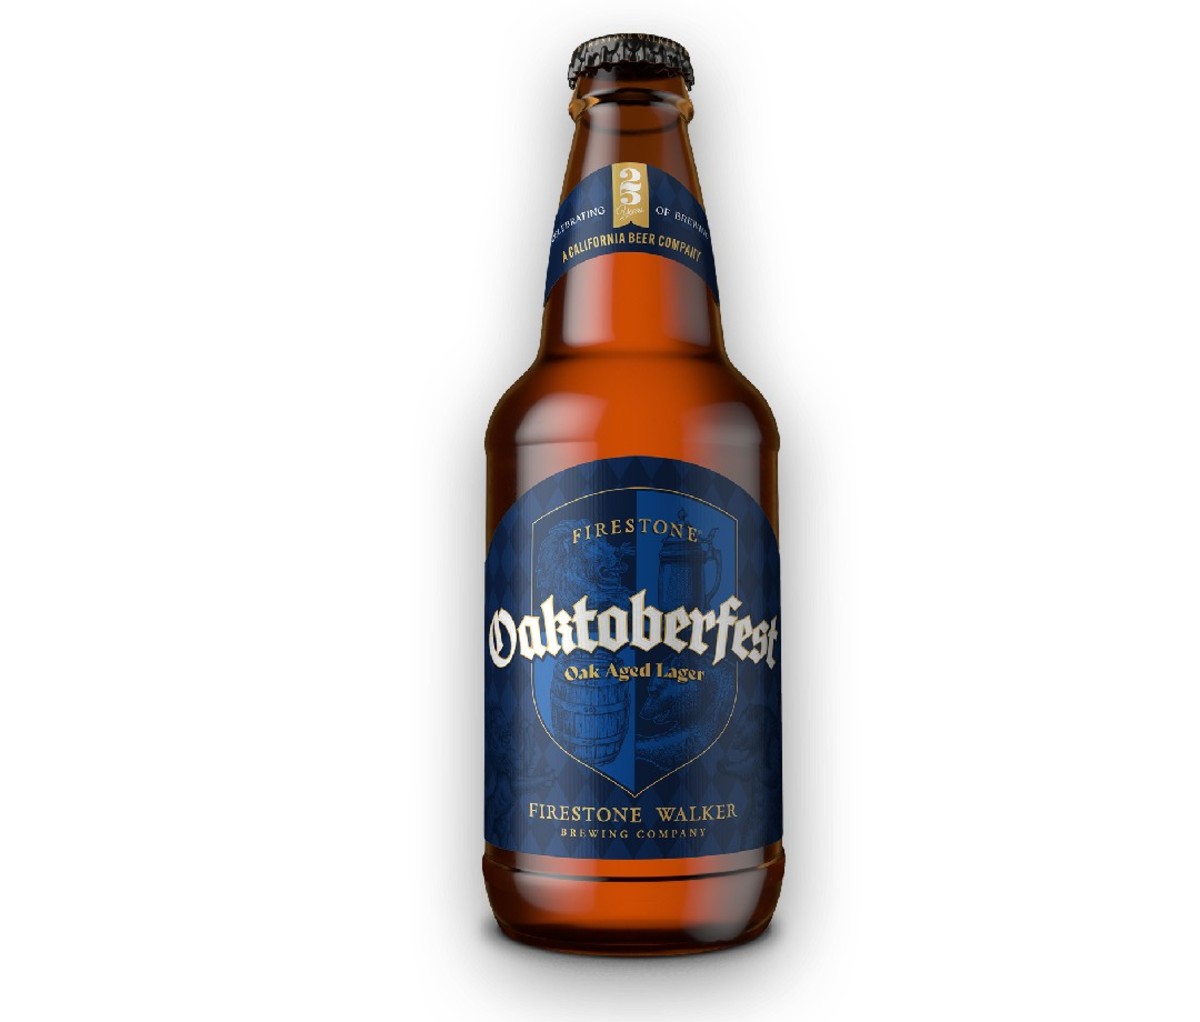 Bottle of Firestone Walker Oaktoberfest beer